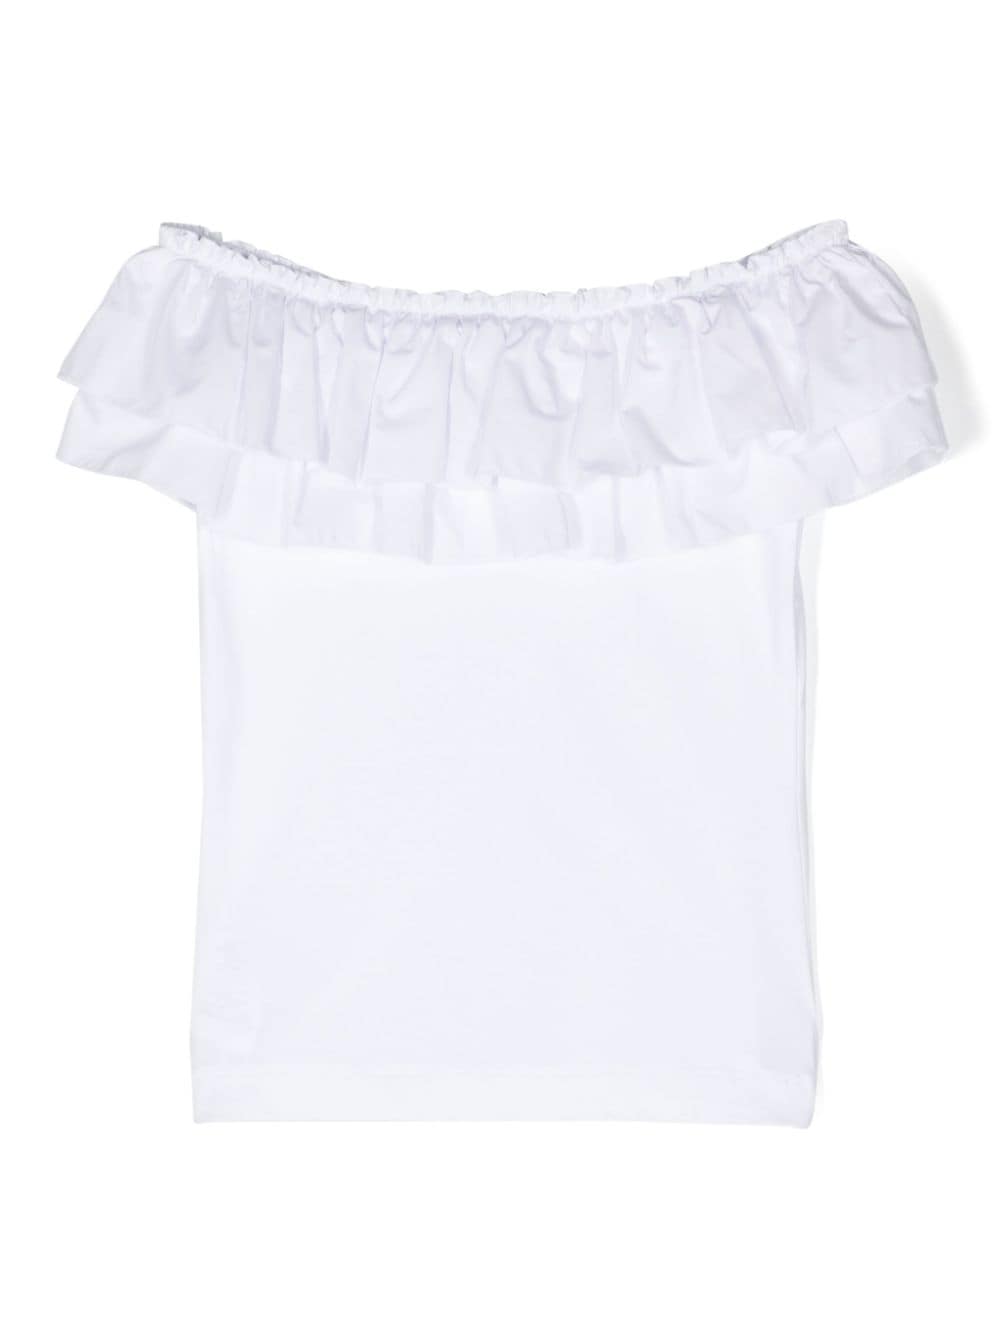 T-shirt fille blanc laiteux